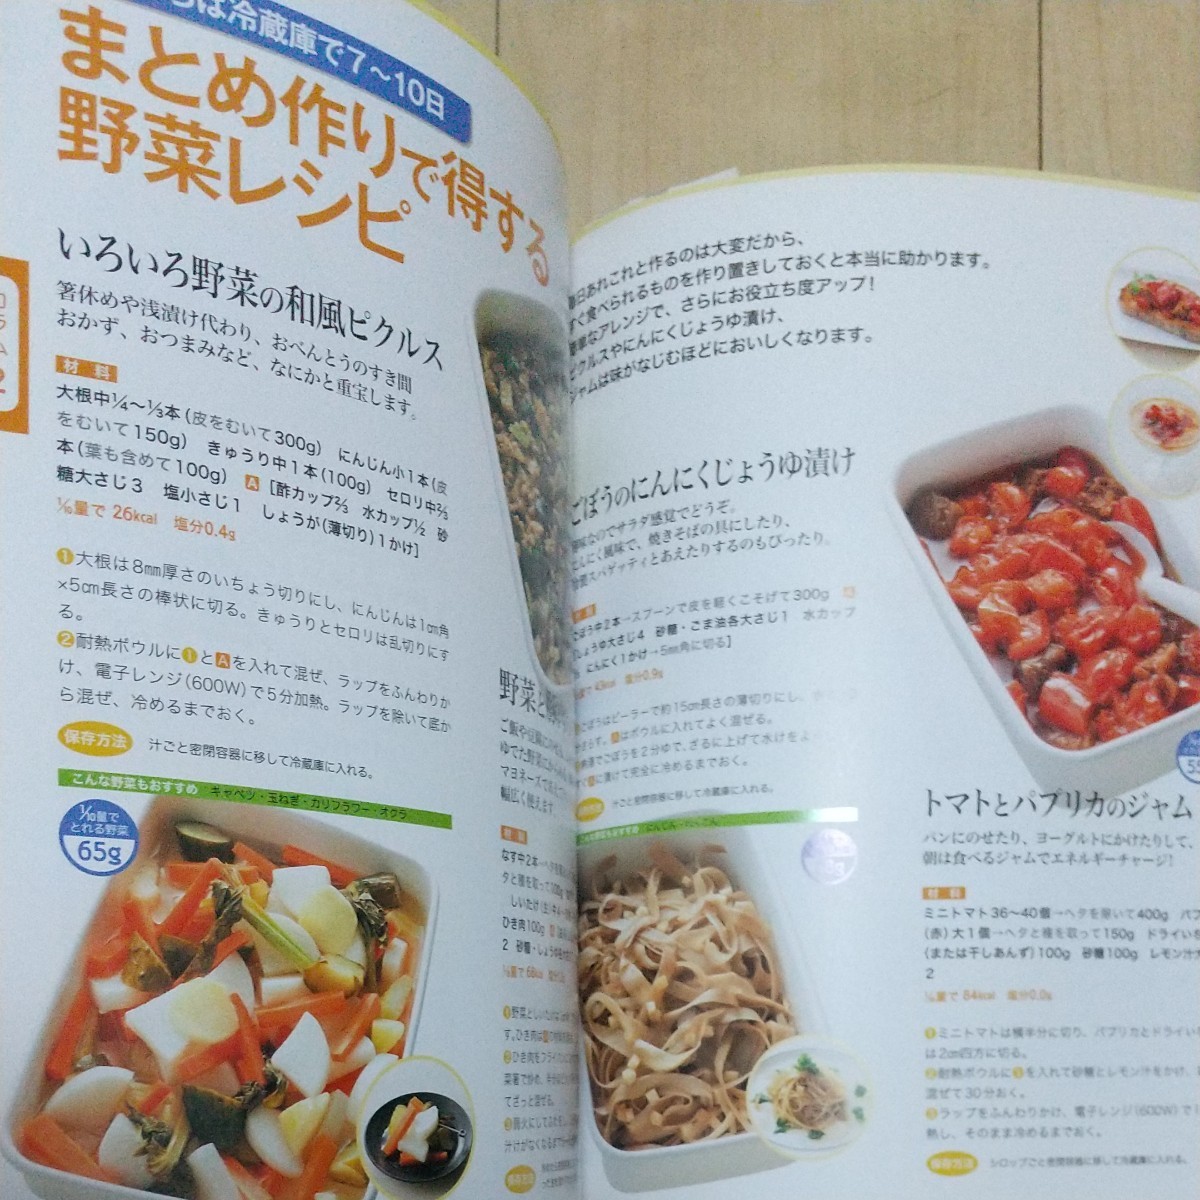 料理本 「ぜーんぶ野菜たっぷり!体いきいきレシピ」レシピ